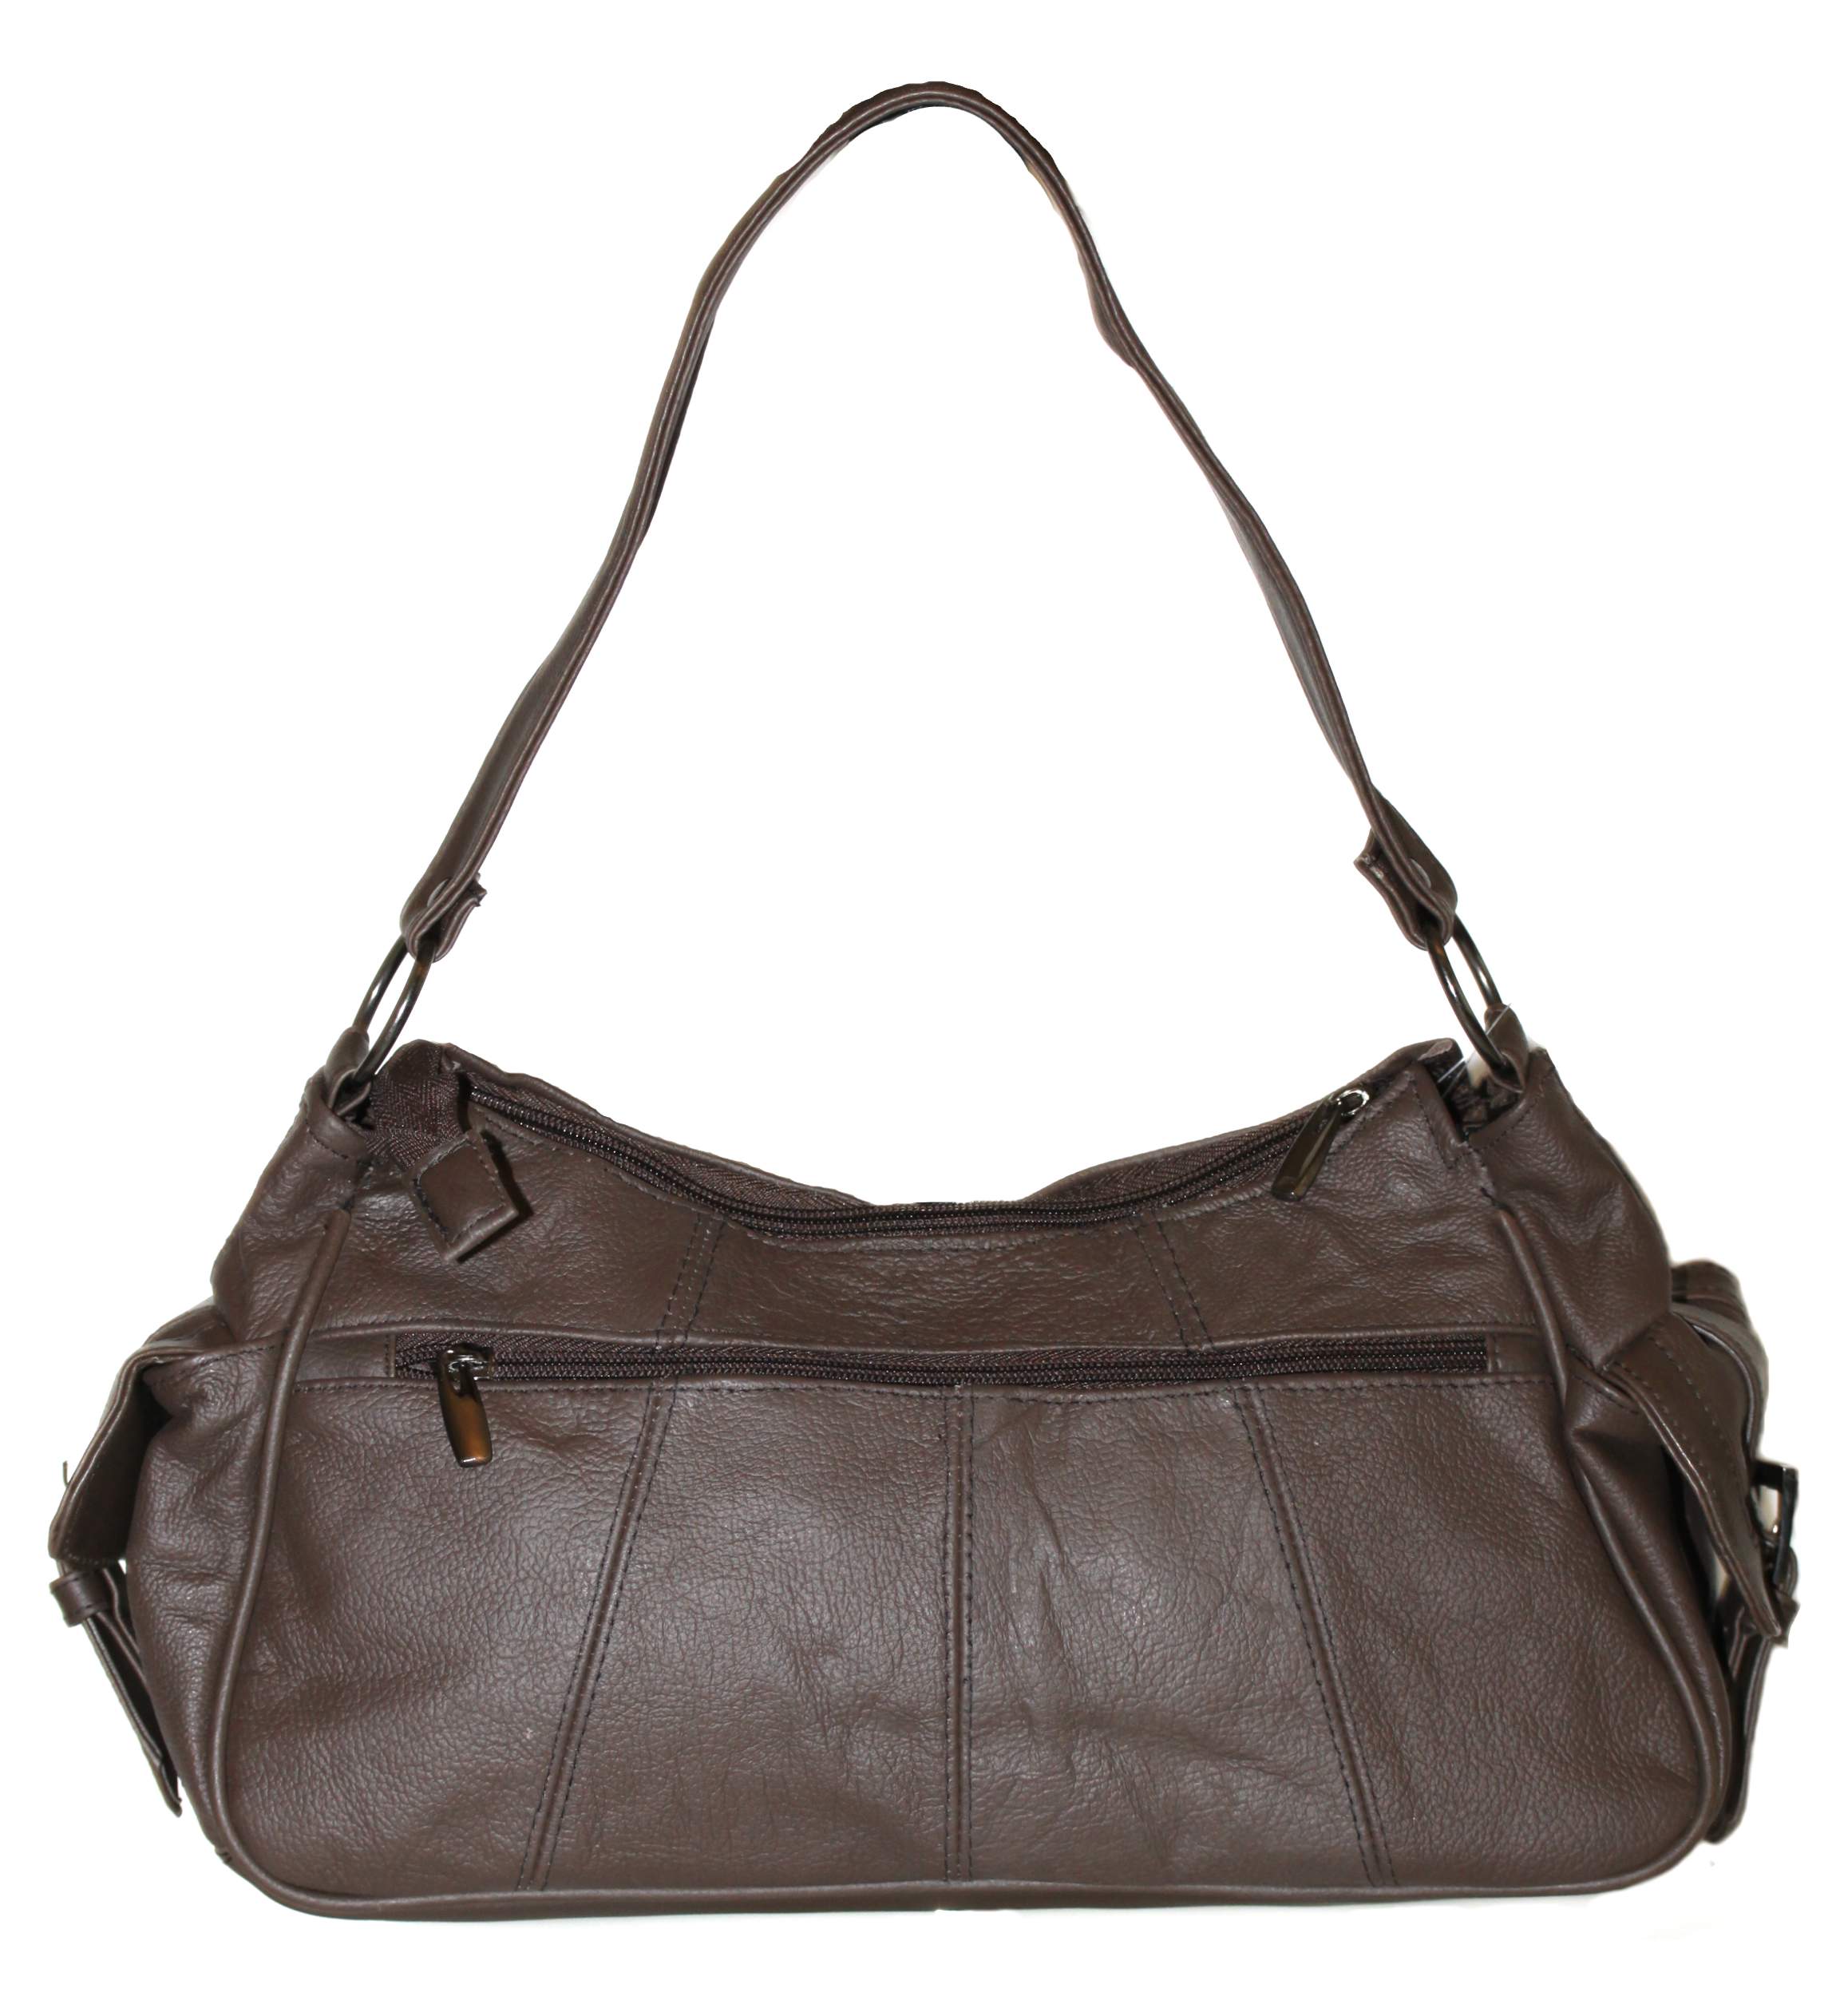 Genuine Second Hand Designer Handbags Uk Ebay | semashow.com